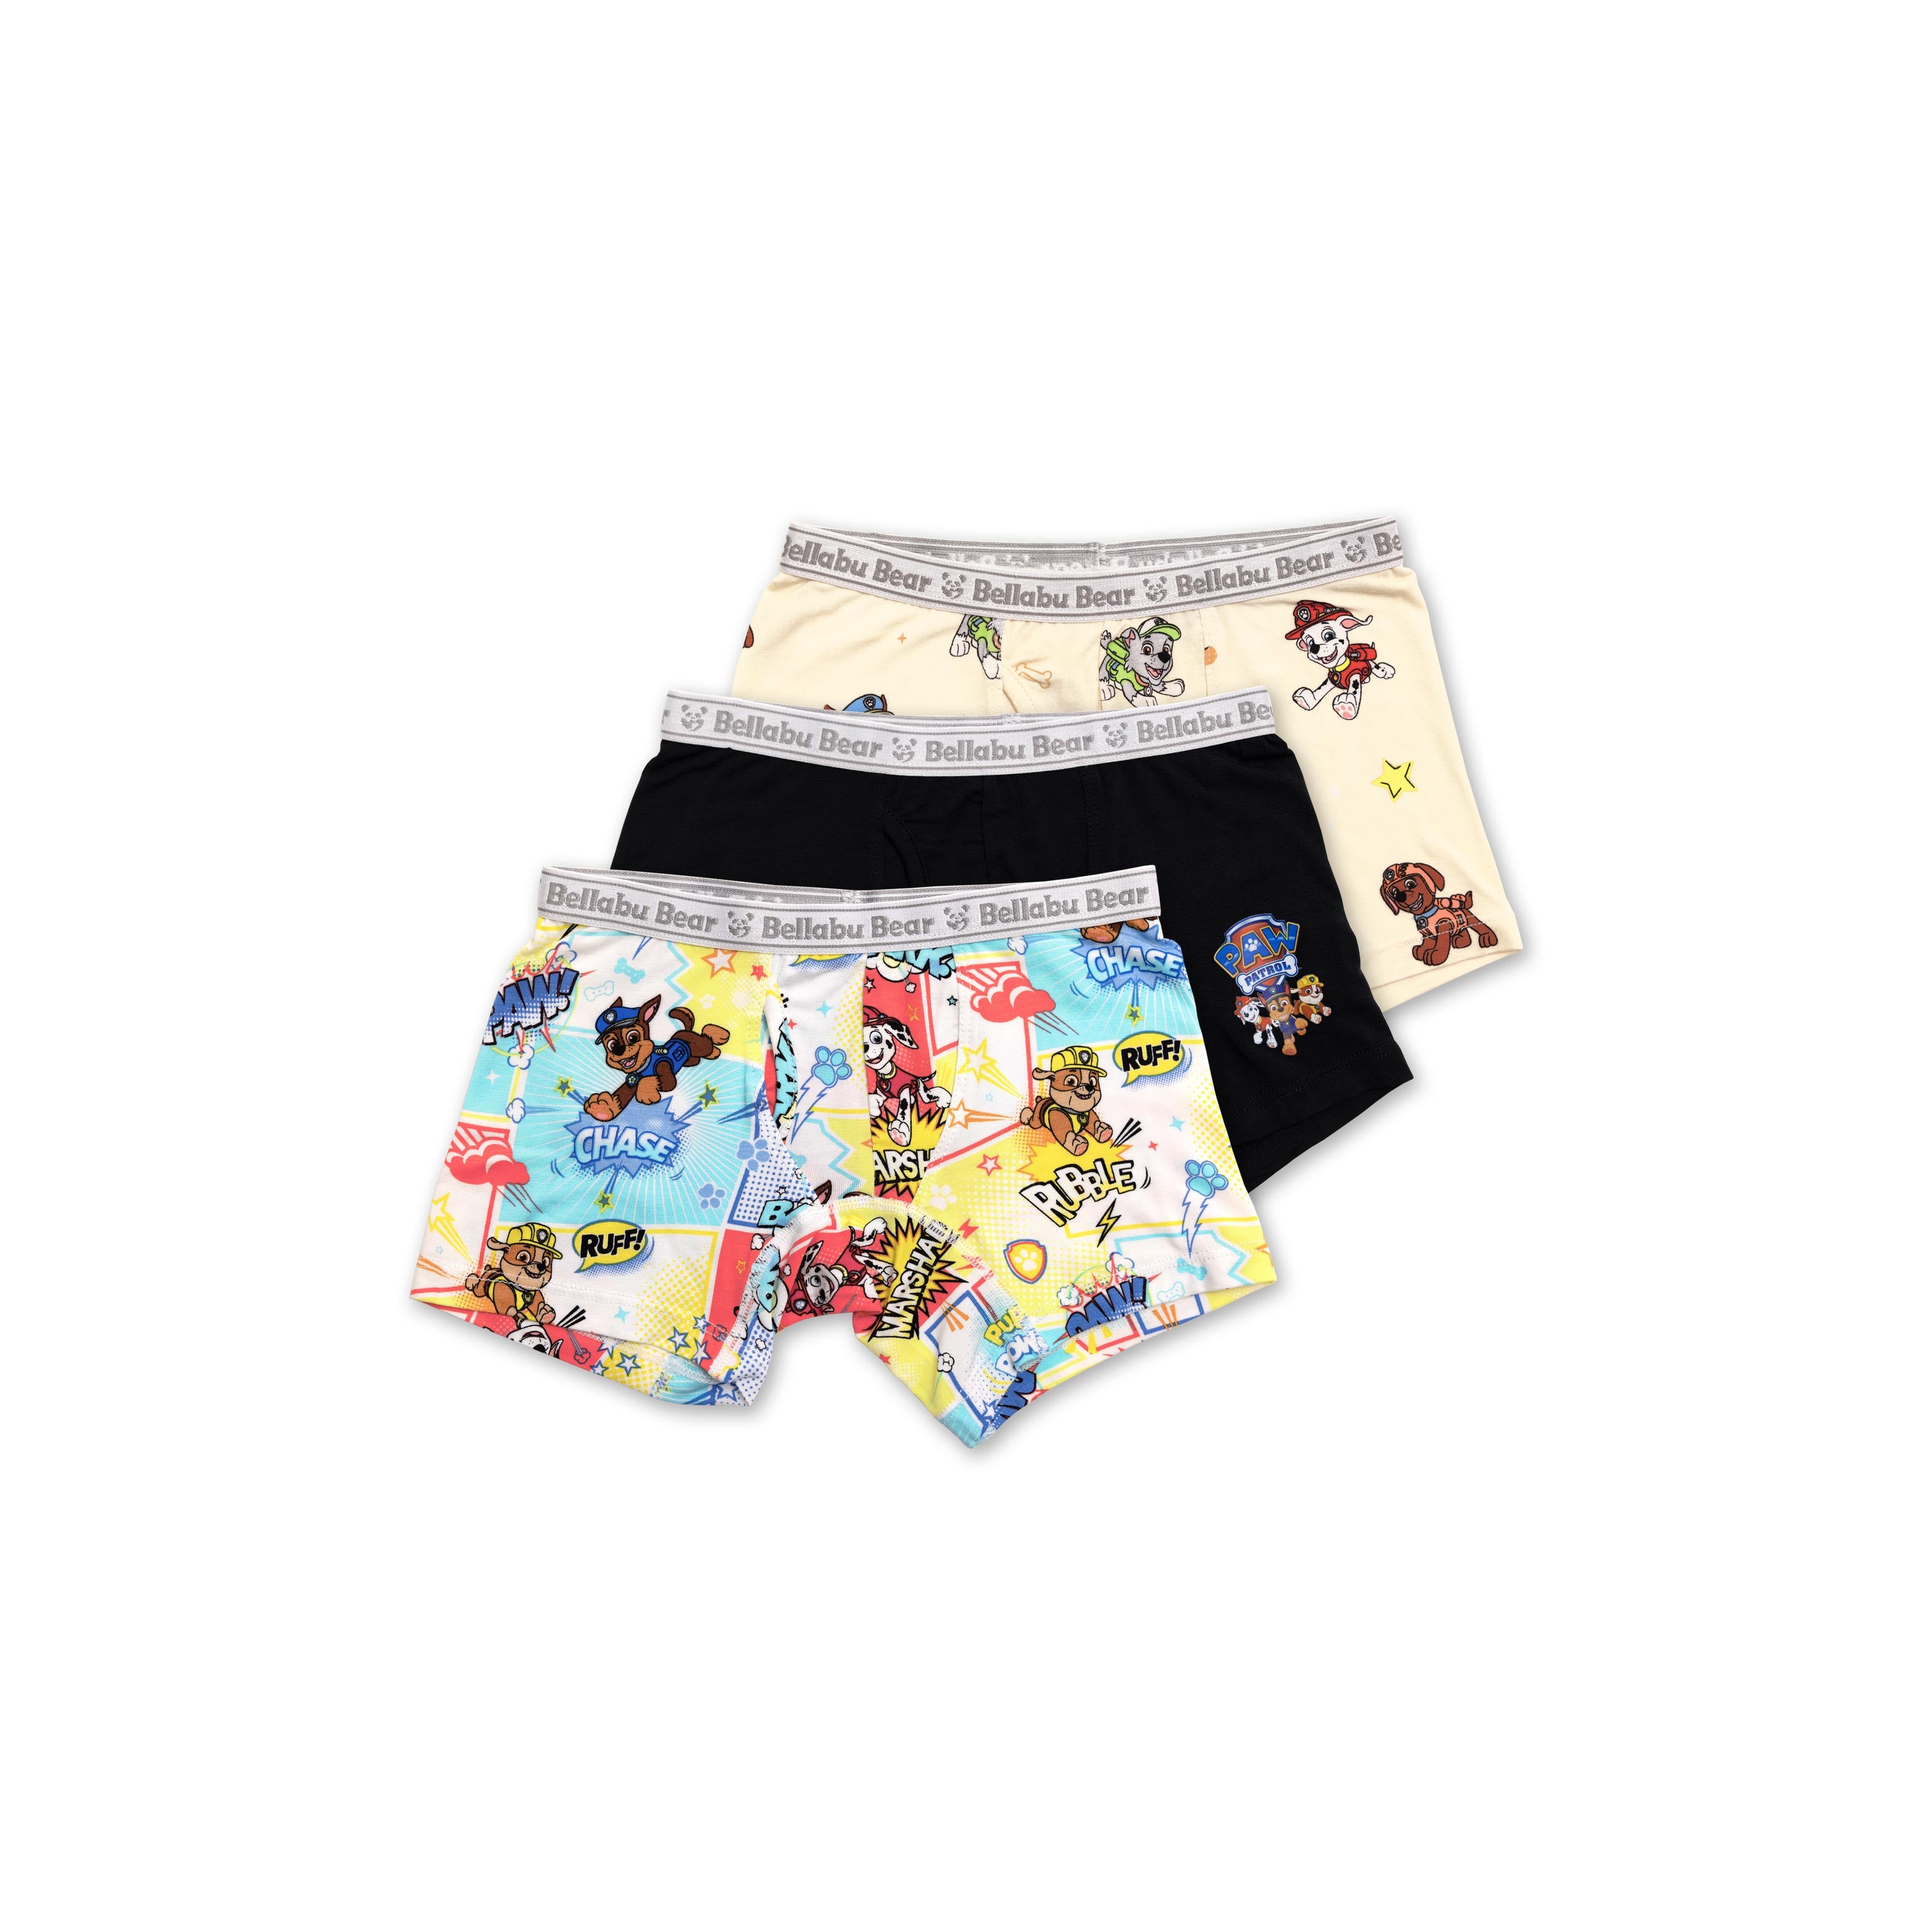 nickelodeon Paw Patrol Boys 5 Pack Underwear Briefs Size 6